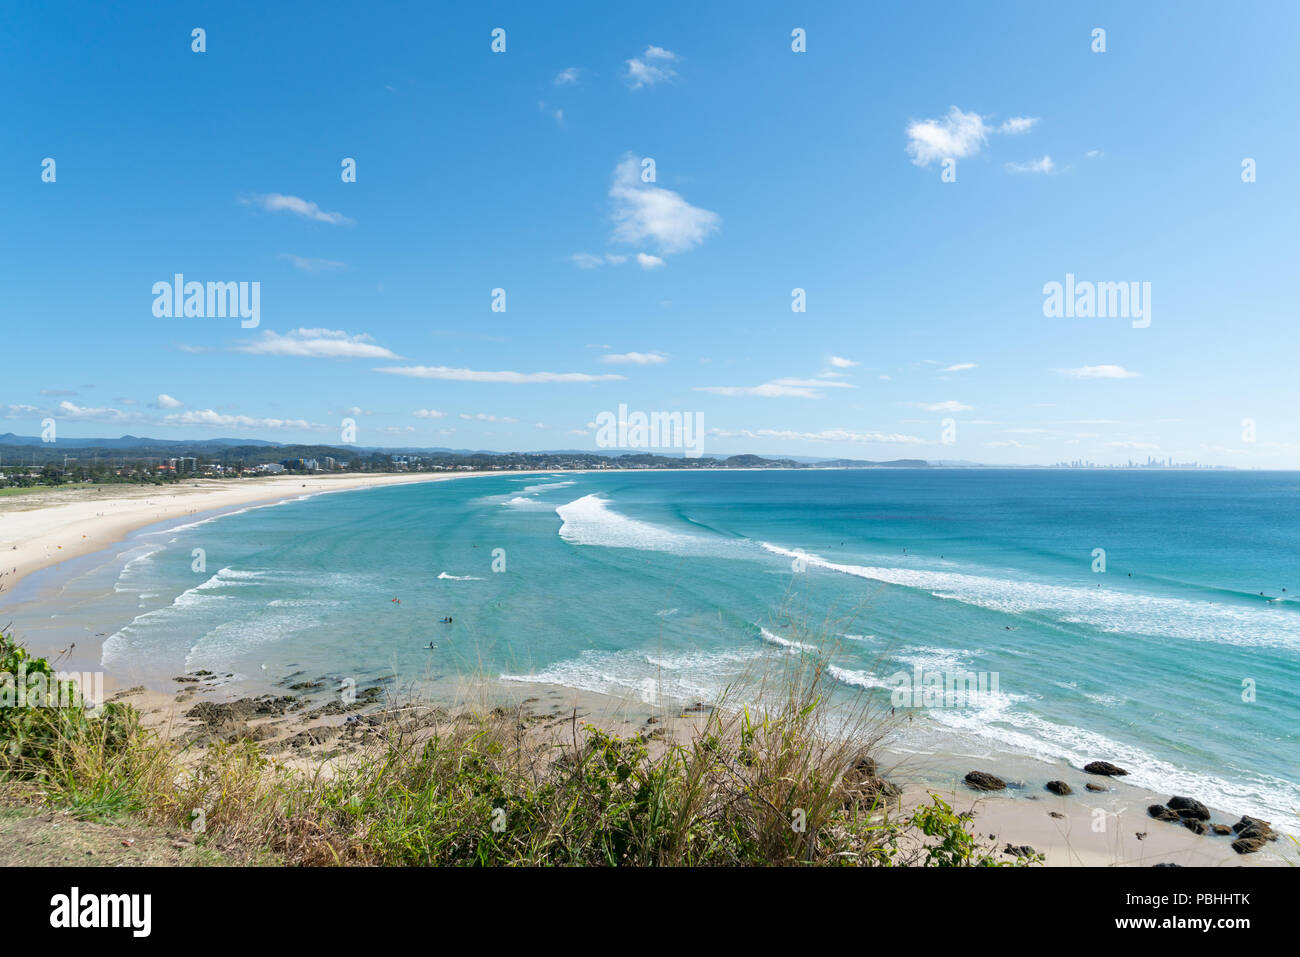 Coolangatta lookout vista lungo la spiaggia di sabbia bianca con acqua turchese al paradiso del surf in distanza Foto Stock